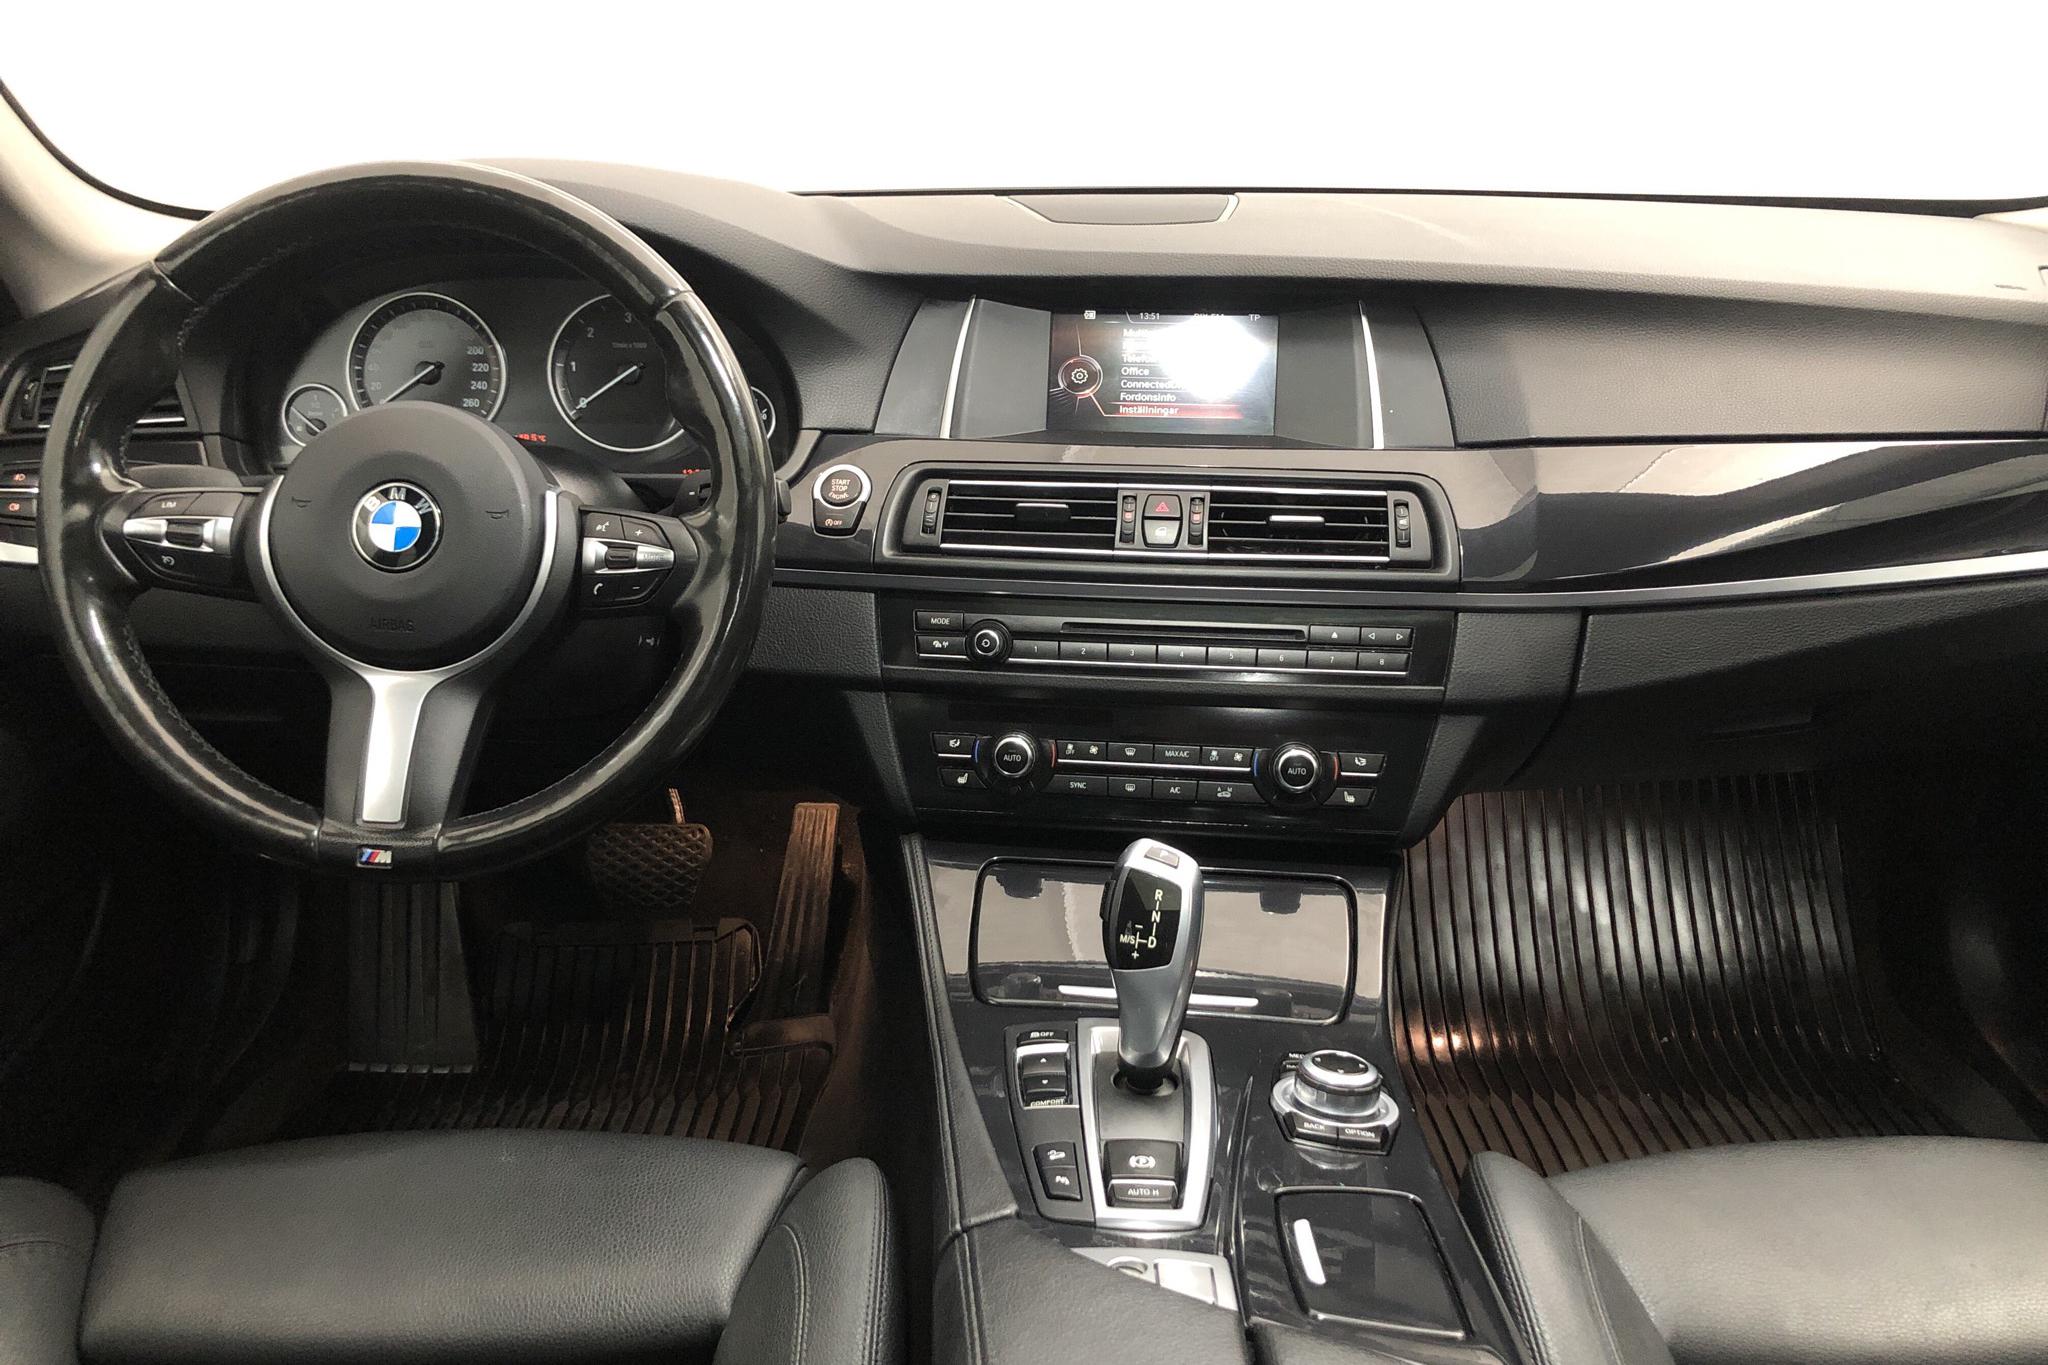 BMW 520d xDrive Sedan, F10 (190hk) - 148 290 km - Automatic - black - 2016